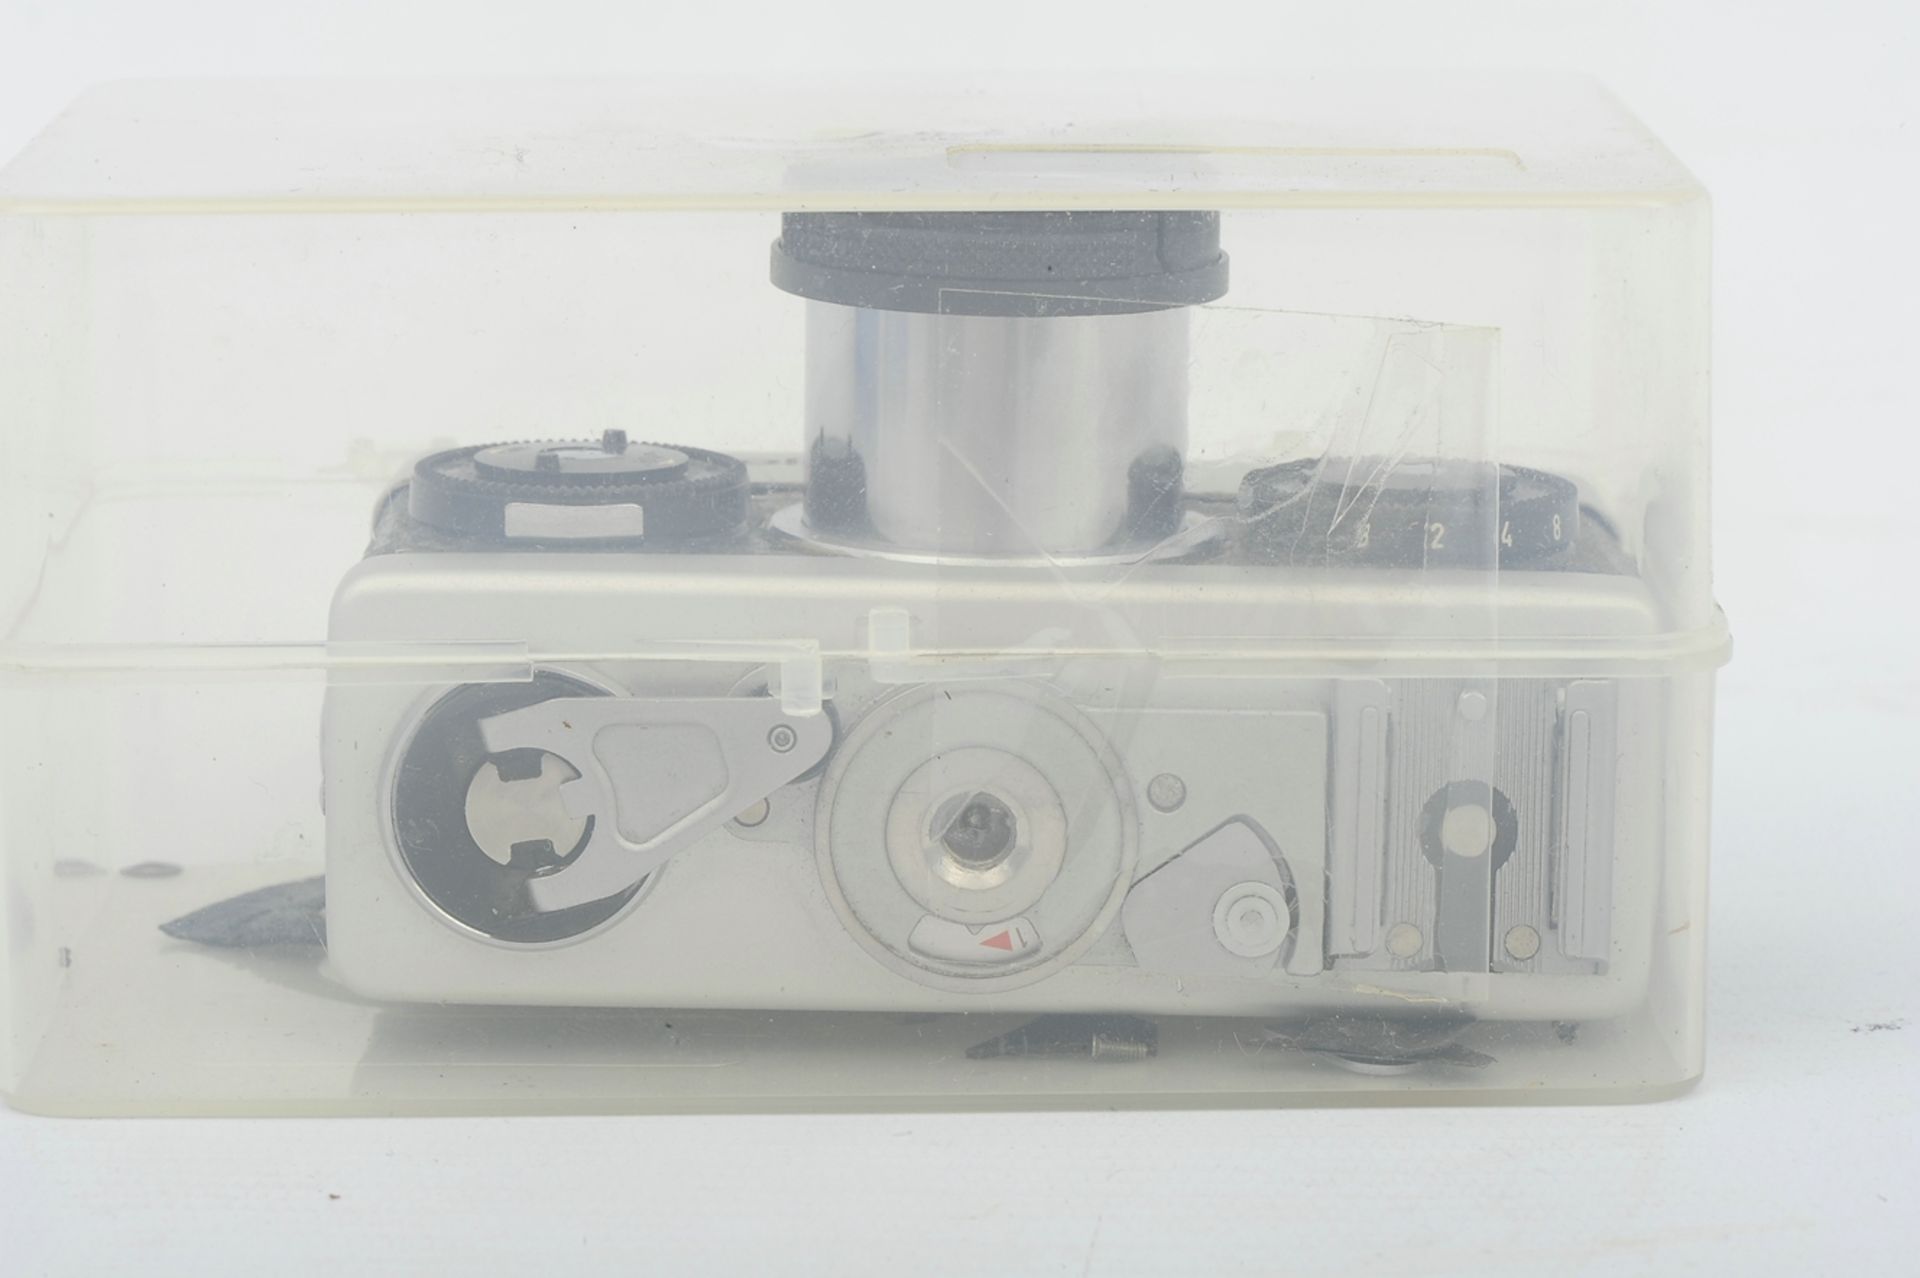 6teiliges Konvolut "ROLLEI" - Kameras und Zubehör, bestehend aus: 1 x 35T (unvollendete Reparatur), - Image 19 of 19